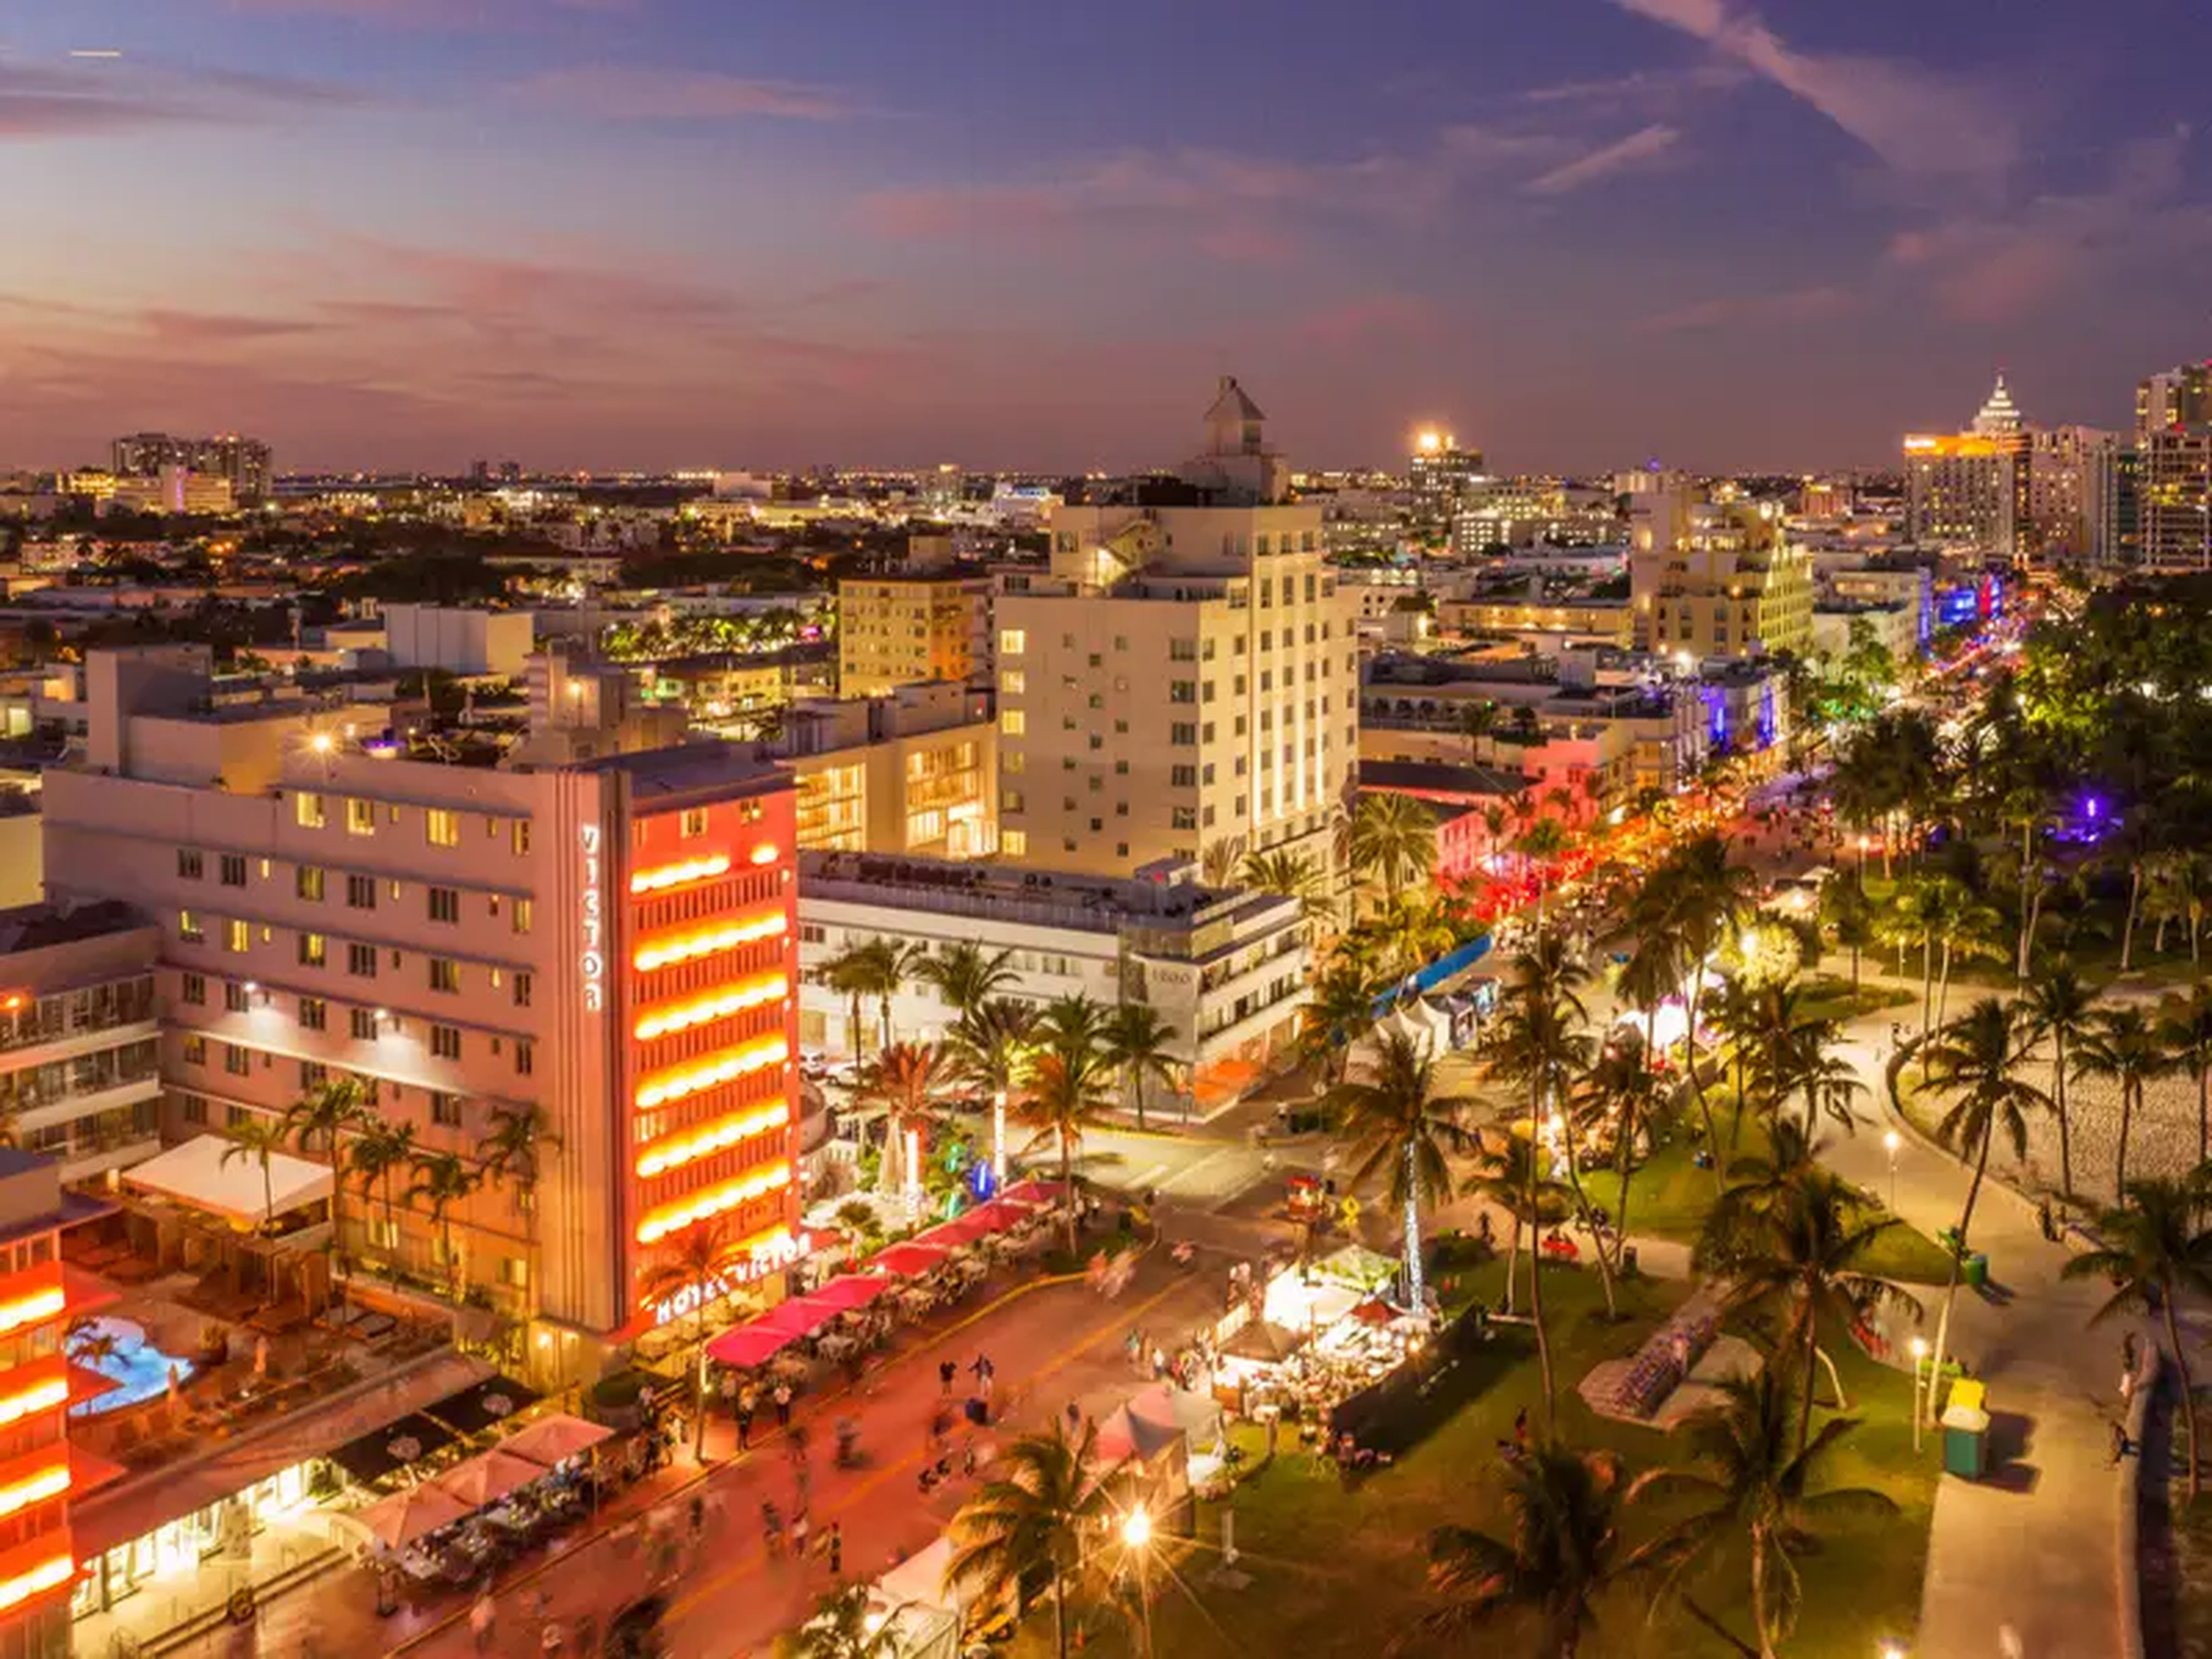 Punto de vista de dron del distrito Art Deco en South Beach y el famoso Ocean Drive y Lummus Park por la noche.